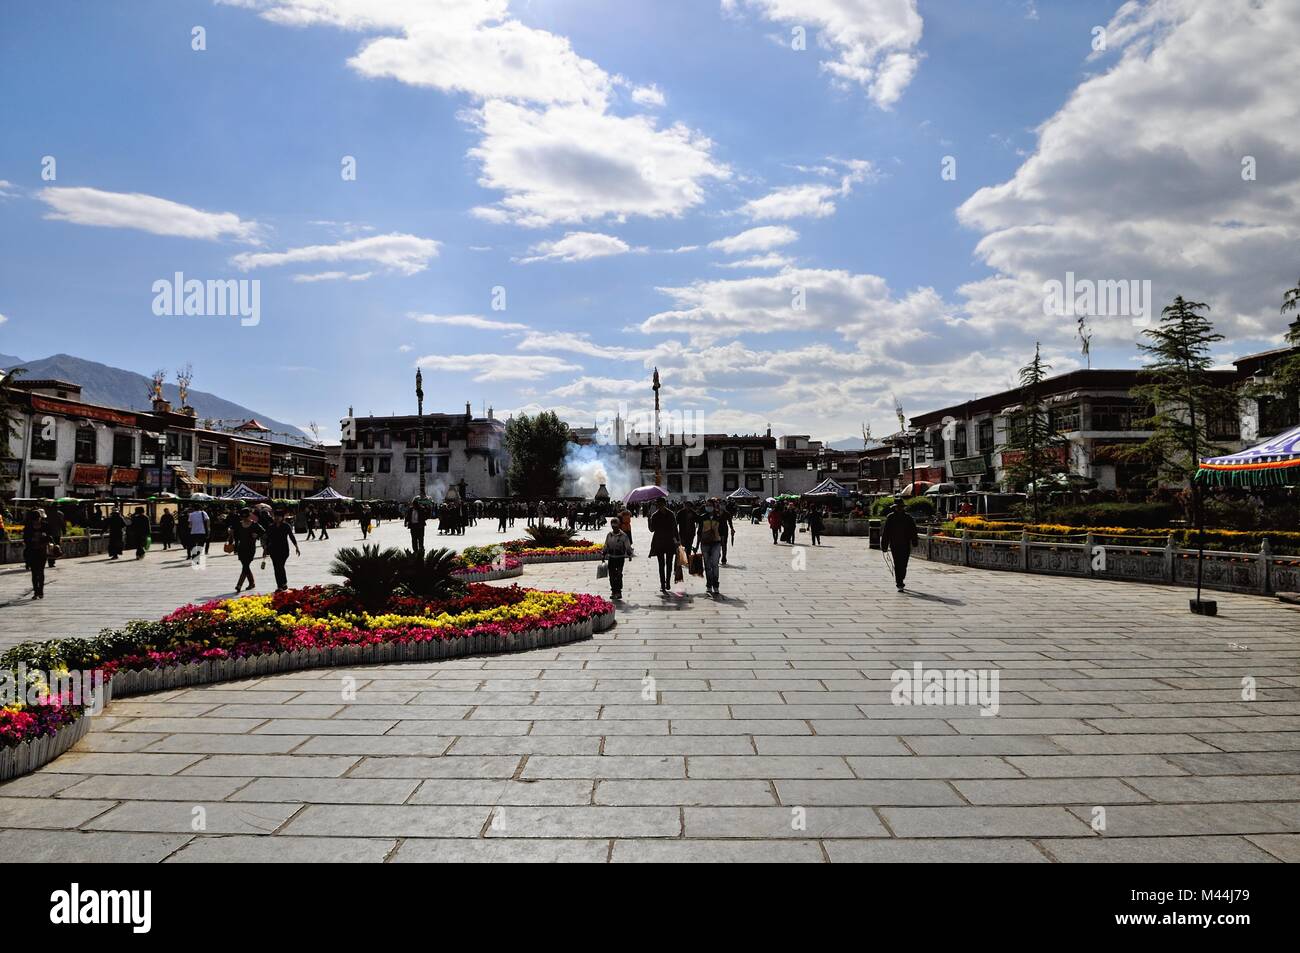 Plaza del Mercado Barkor del templo de Jokhang Lhasa (Tíbet) Foto de stock